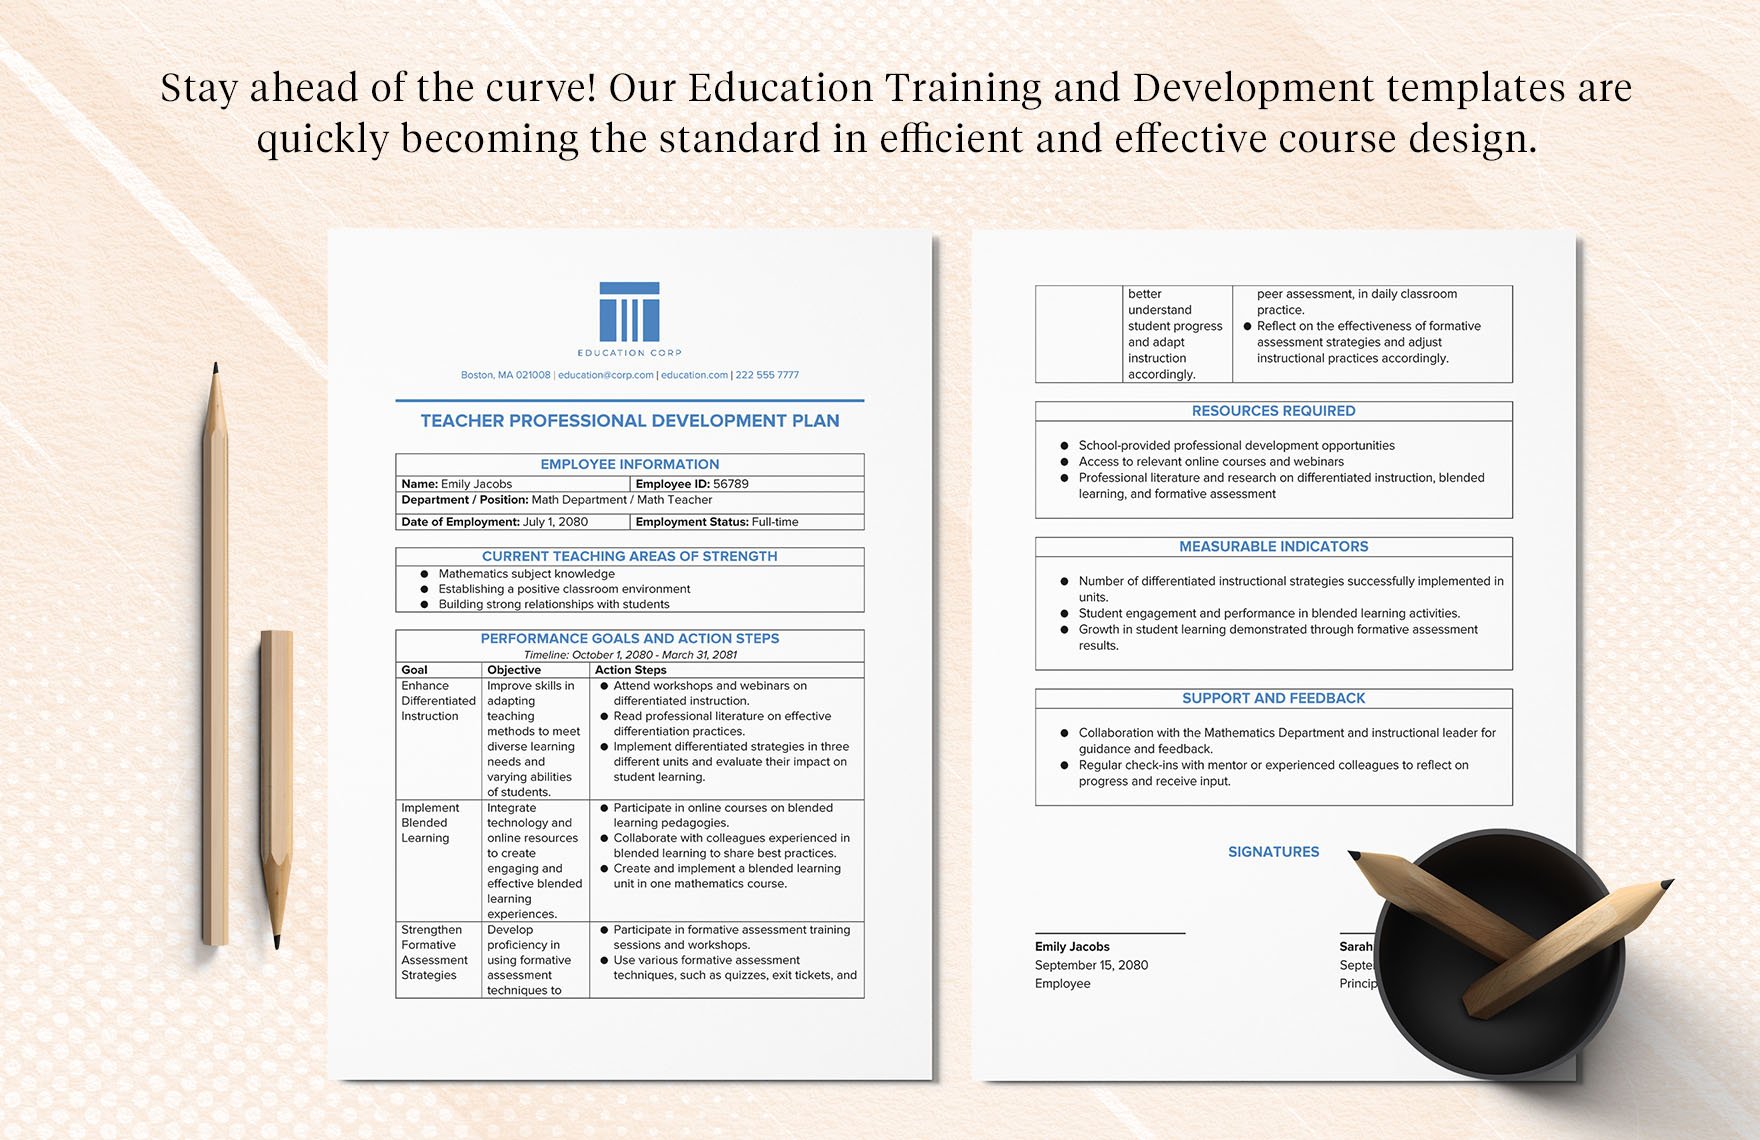 Teacher Professional Development Plan Template